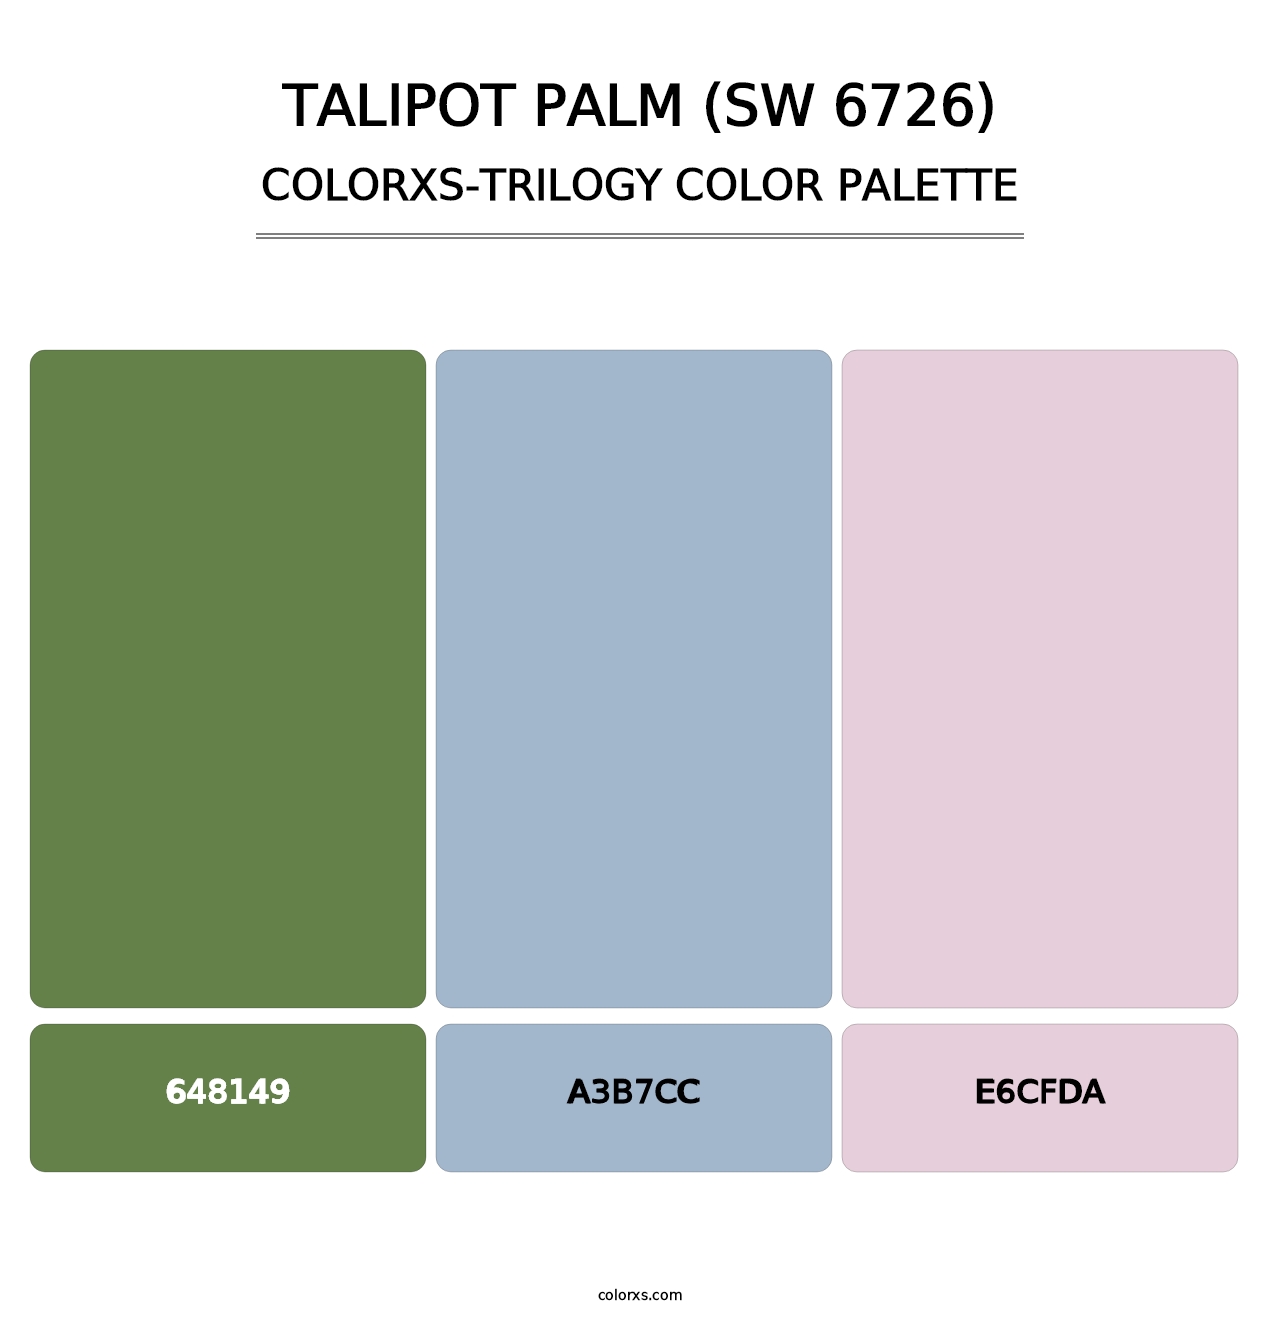 Talipot Palm (SW 6726) - Colorxs Trilogy Palette